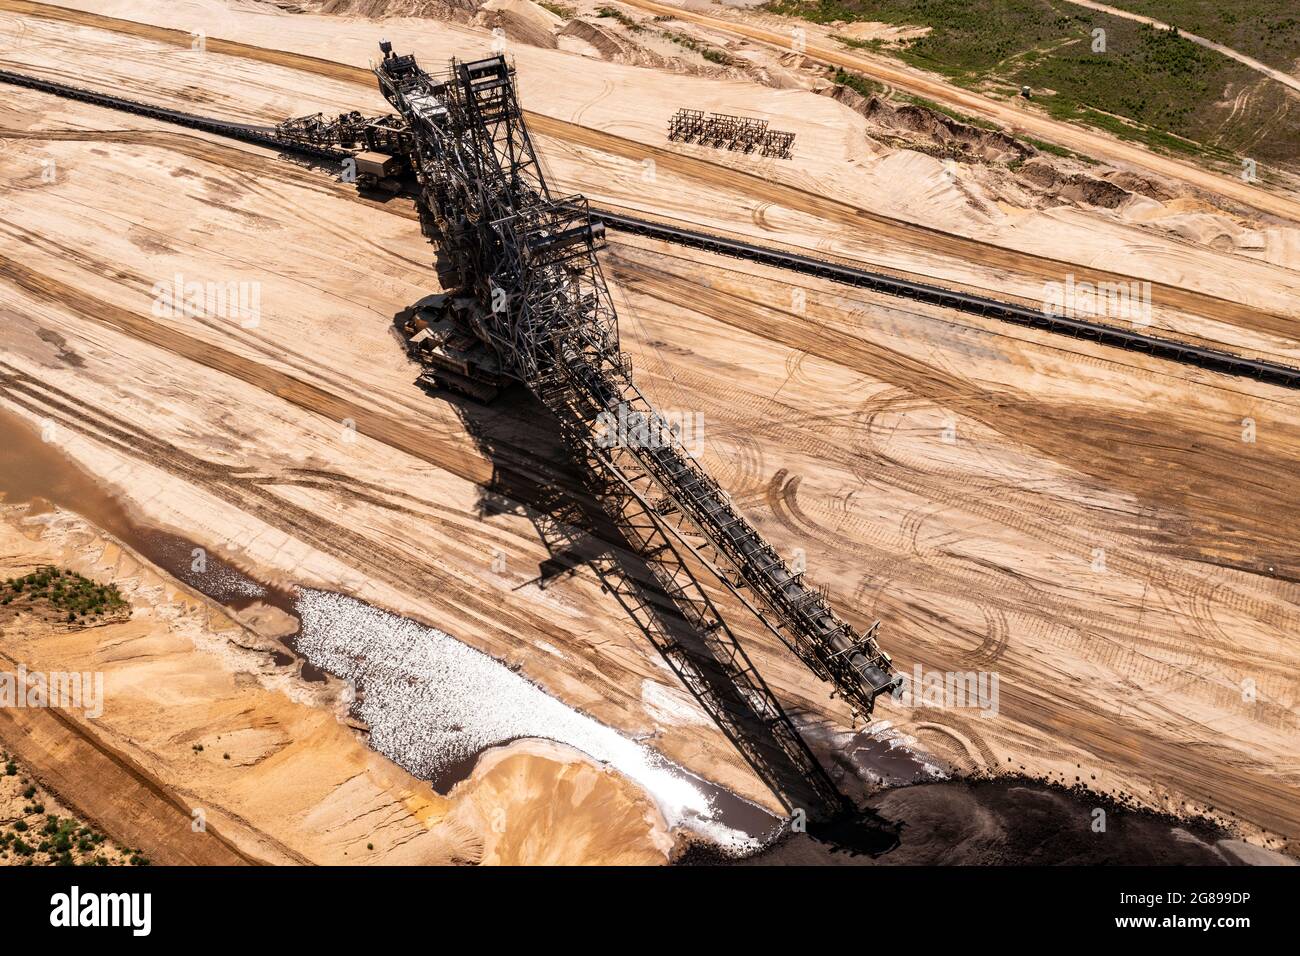 Tagebau Garzweiler bei Jüchen. Ein Braunkohle-Bagger aus der Luft fotografiert. Stock Photo